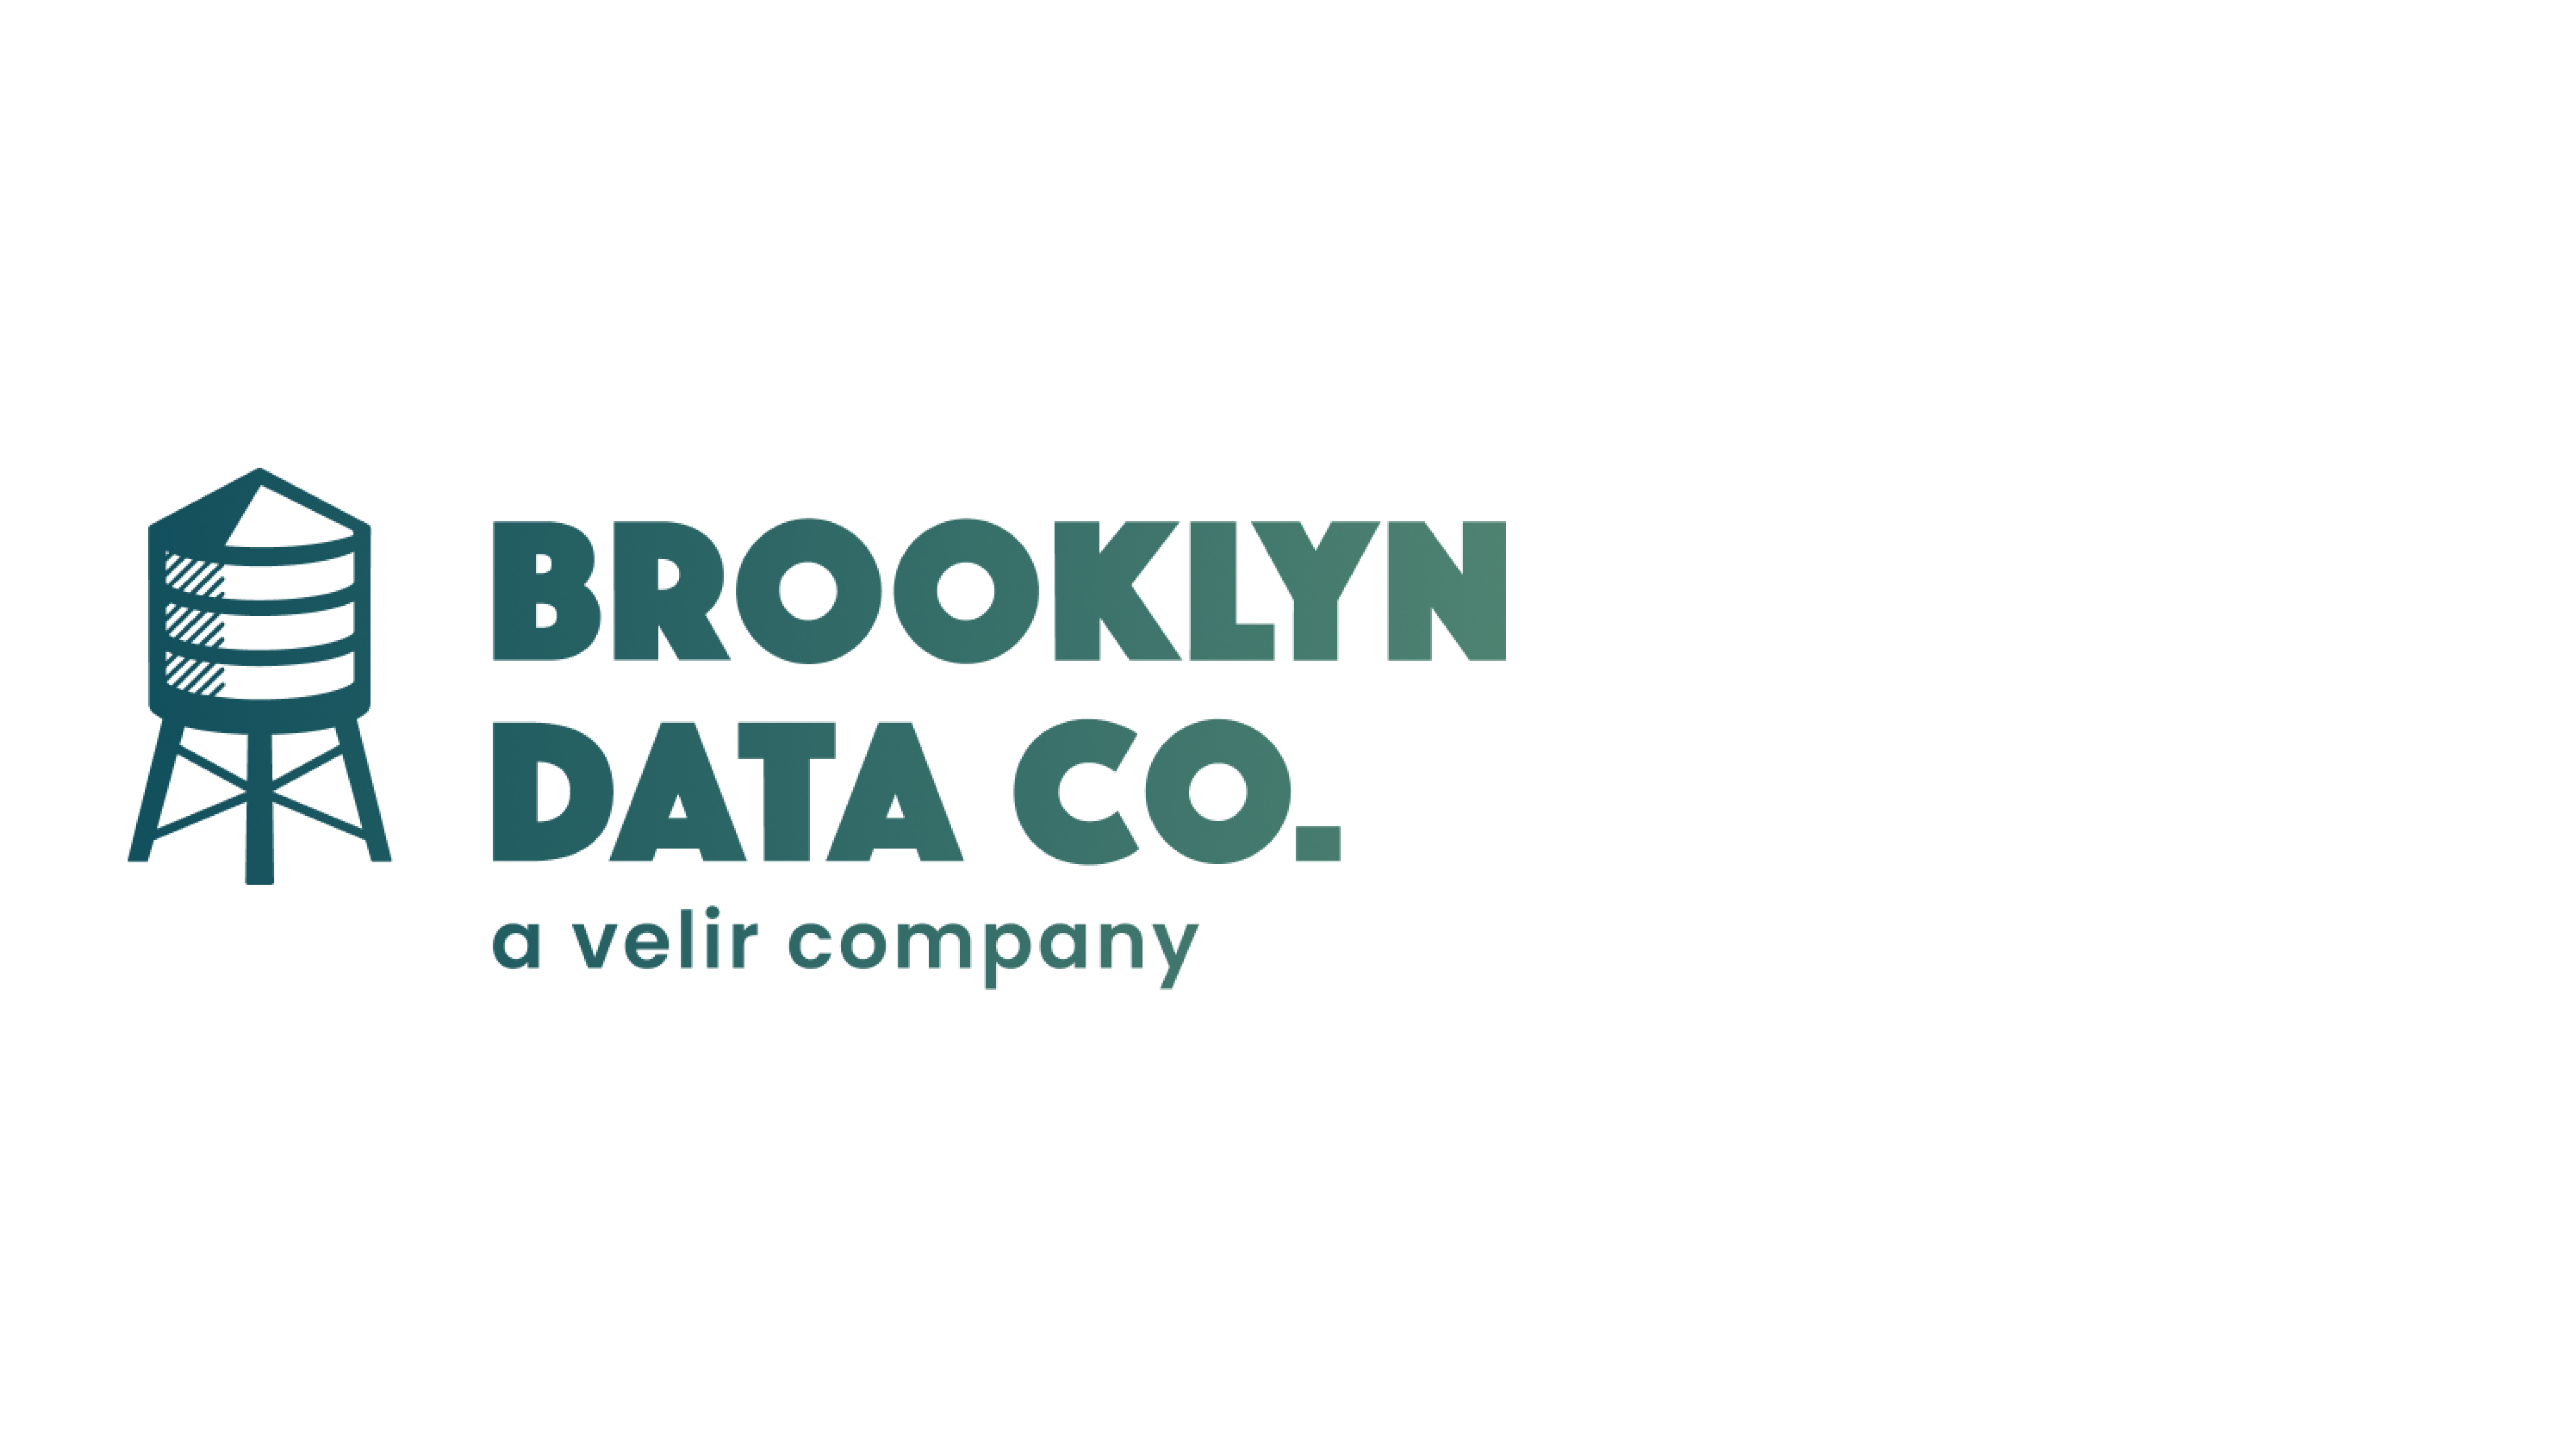 Brooklyn Data Co. logo